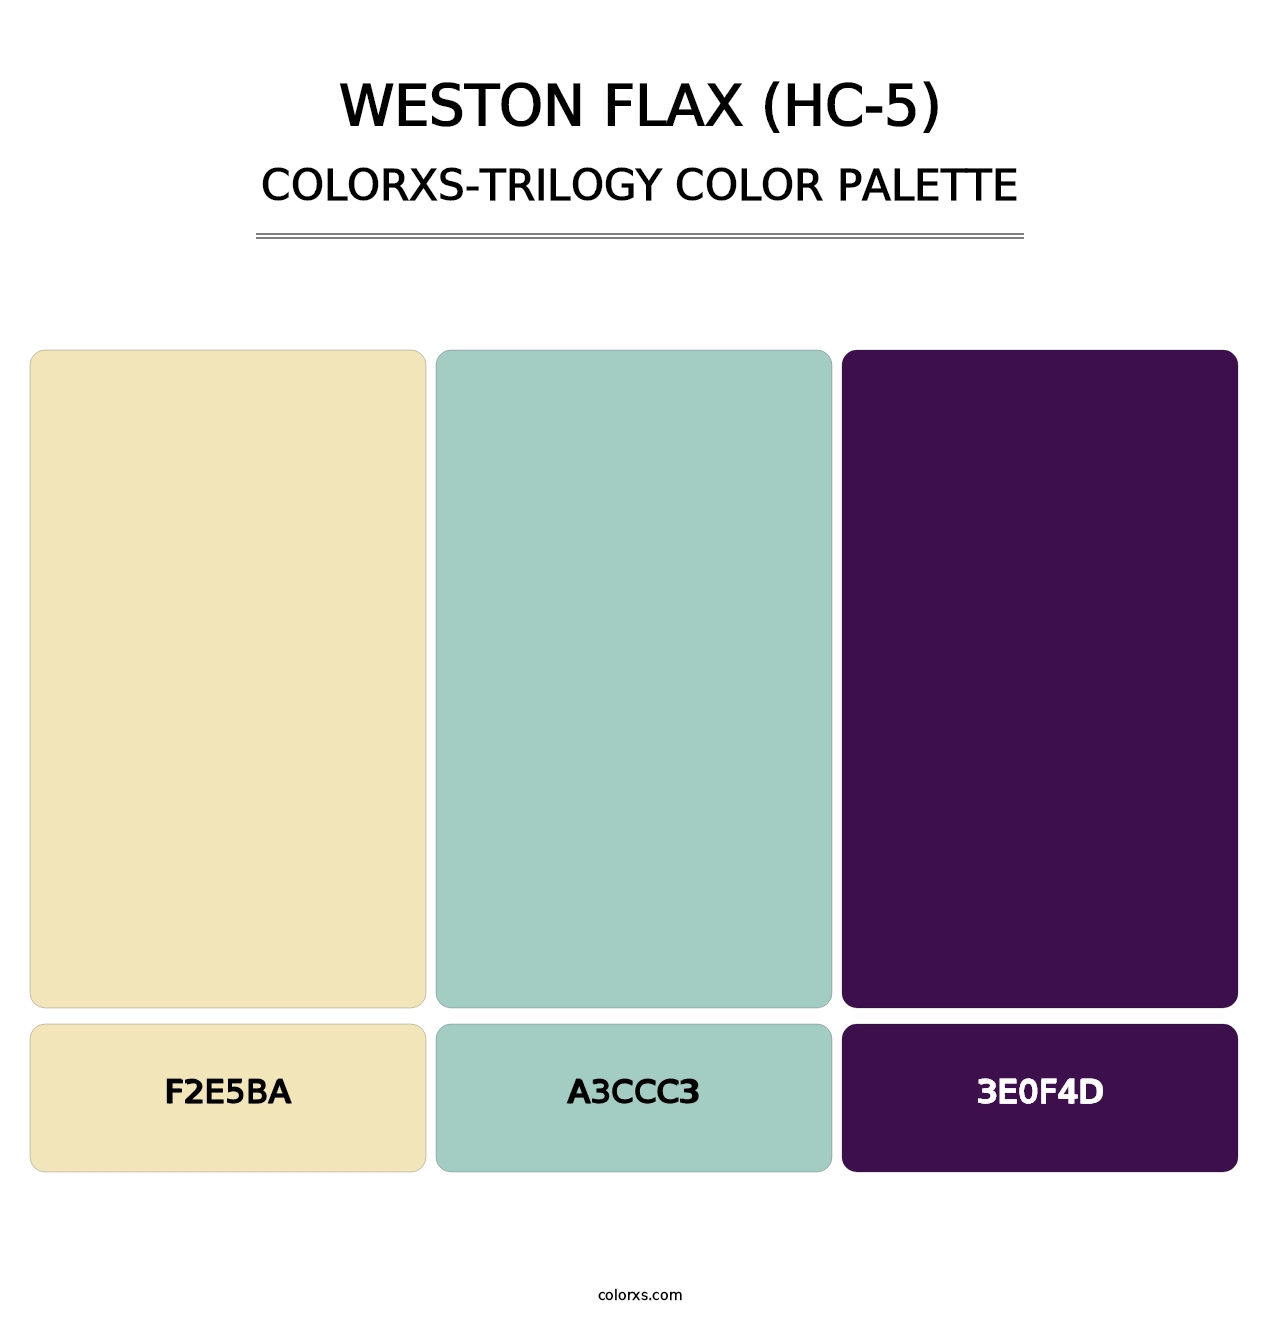 Weston Flax (HC-5) - Colorxs Trilogy Palette